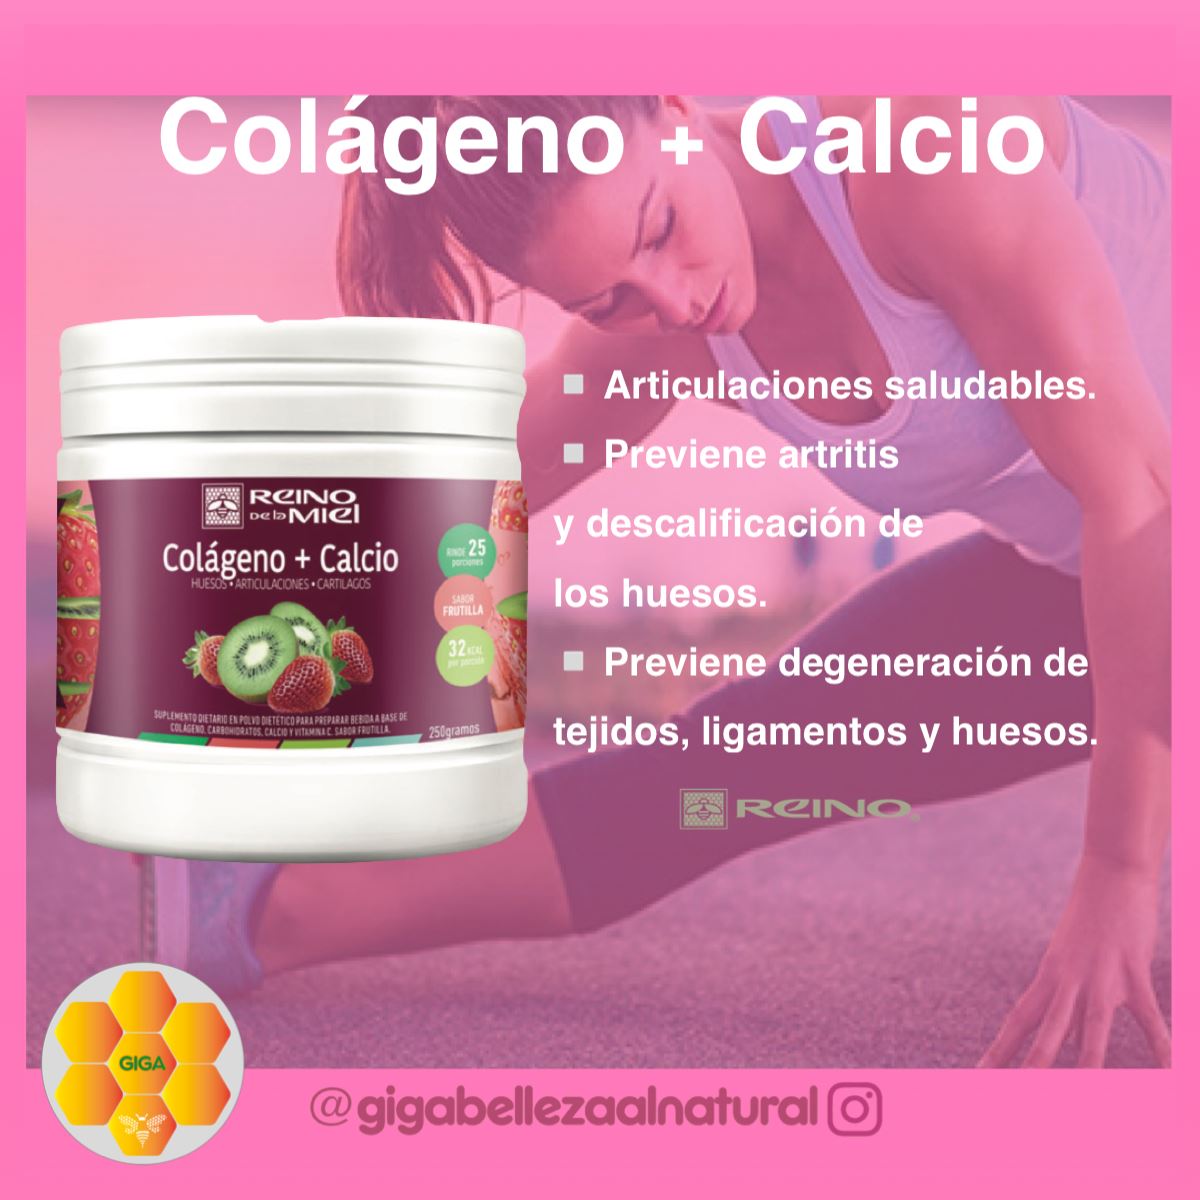 Colágeno hidrolizado + Calcio - InfoGuia Traslasierra - Colágeno hidrolizado + Calcio